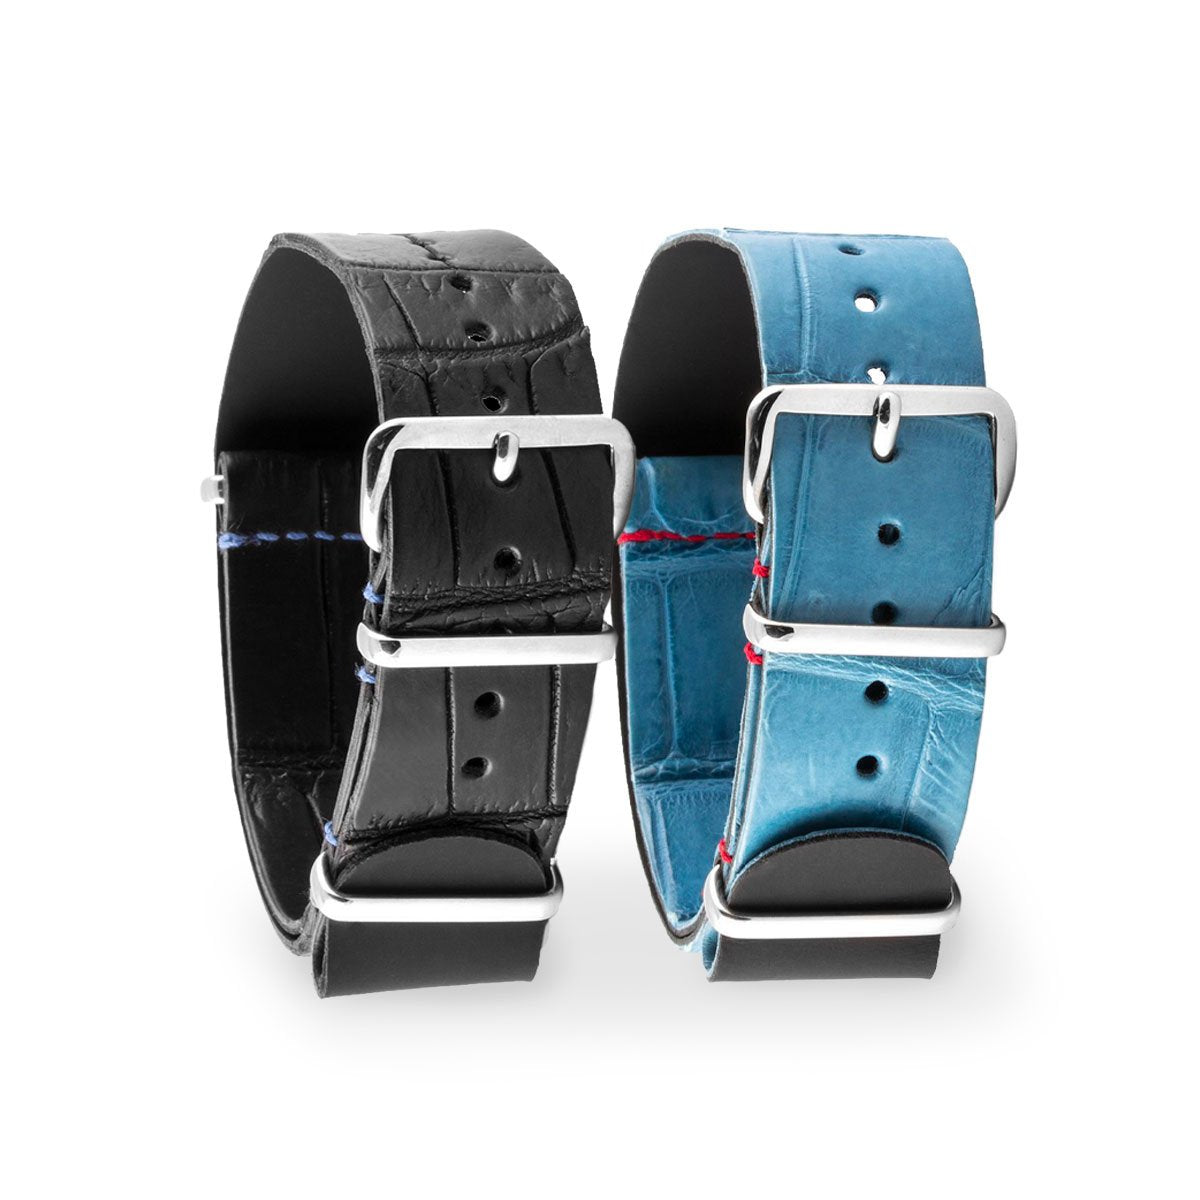 Rolex - Bracelet montre nato - Alligator (noir, bleu) - watch band leather strap - ABP Concept -